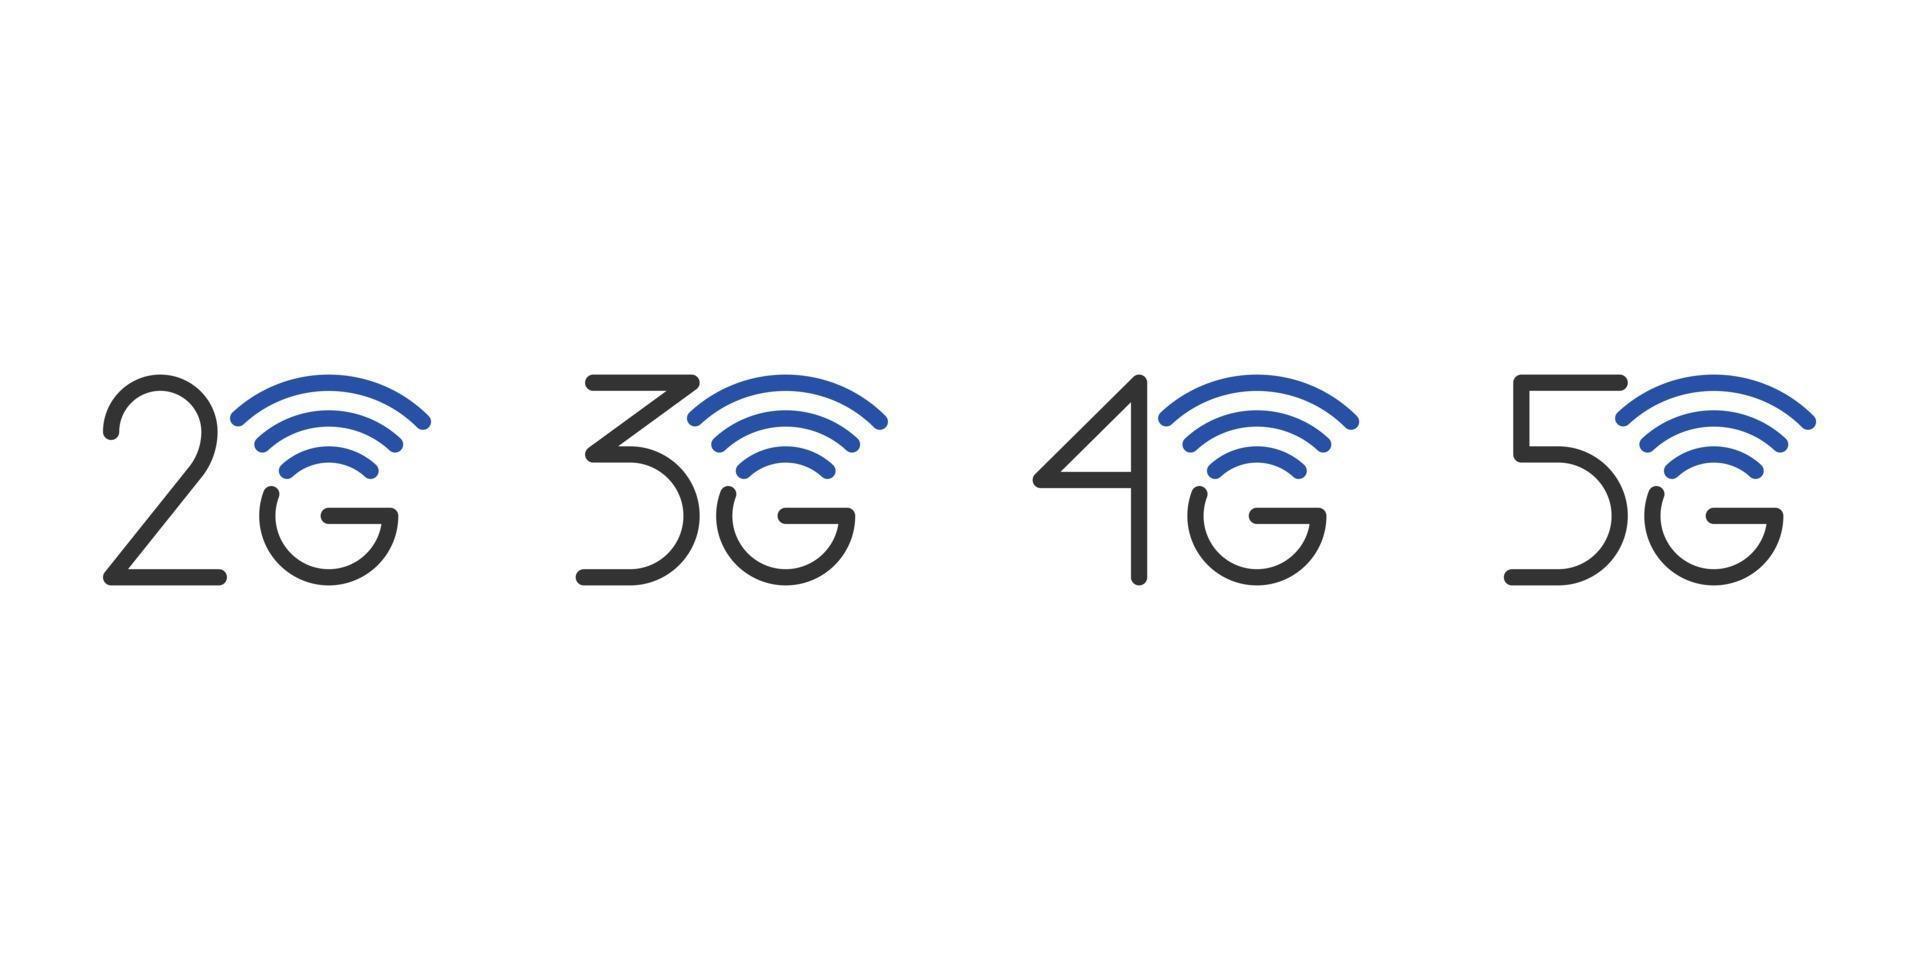 Set di simboli aziendali per la connessione di rete 2g 3g 4g 5g. Icone della tecnologia Internet wireless di quinta generazione e inferiori. illustrazione isolata modello blu di progettazione dell'emblema di comunicazione di vettore